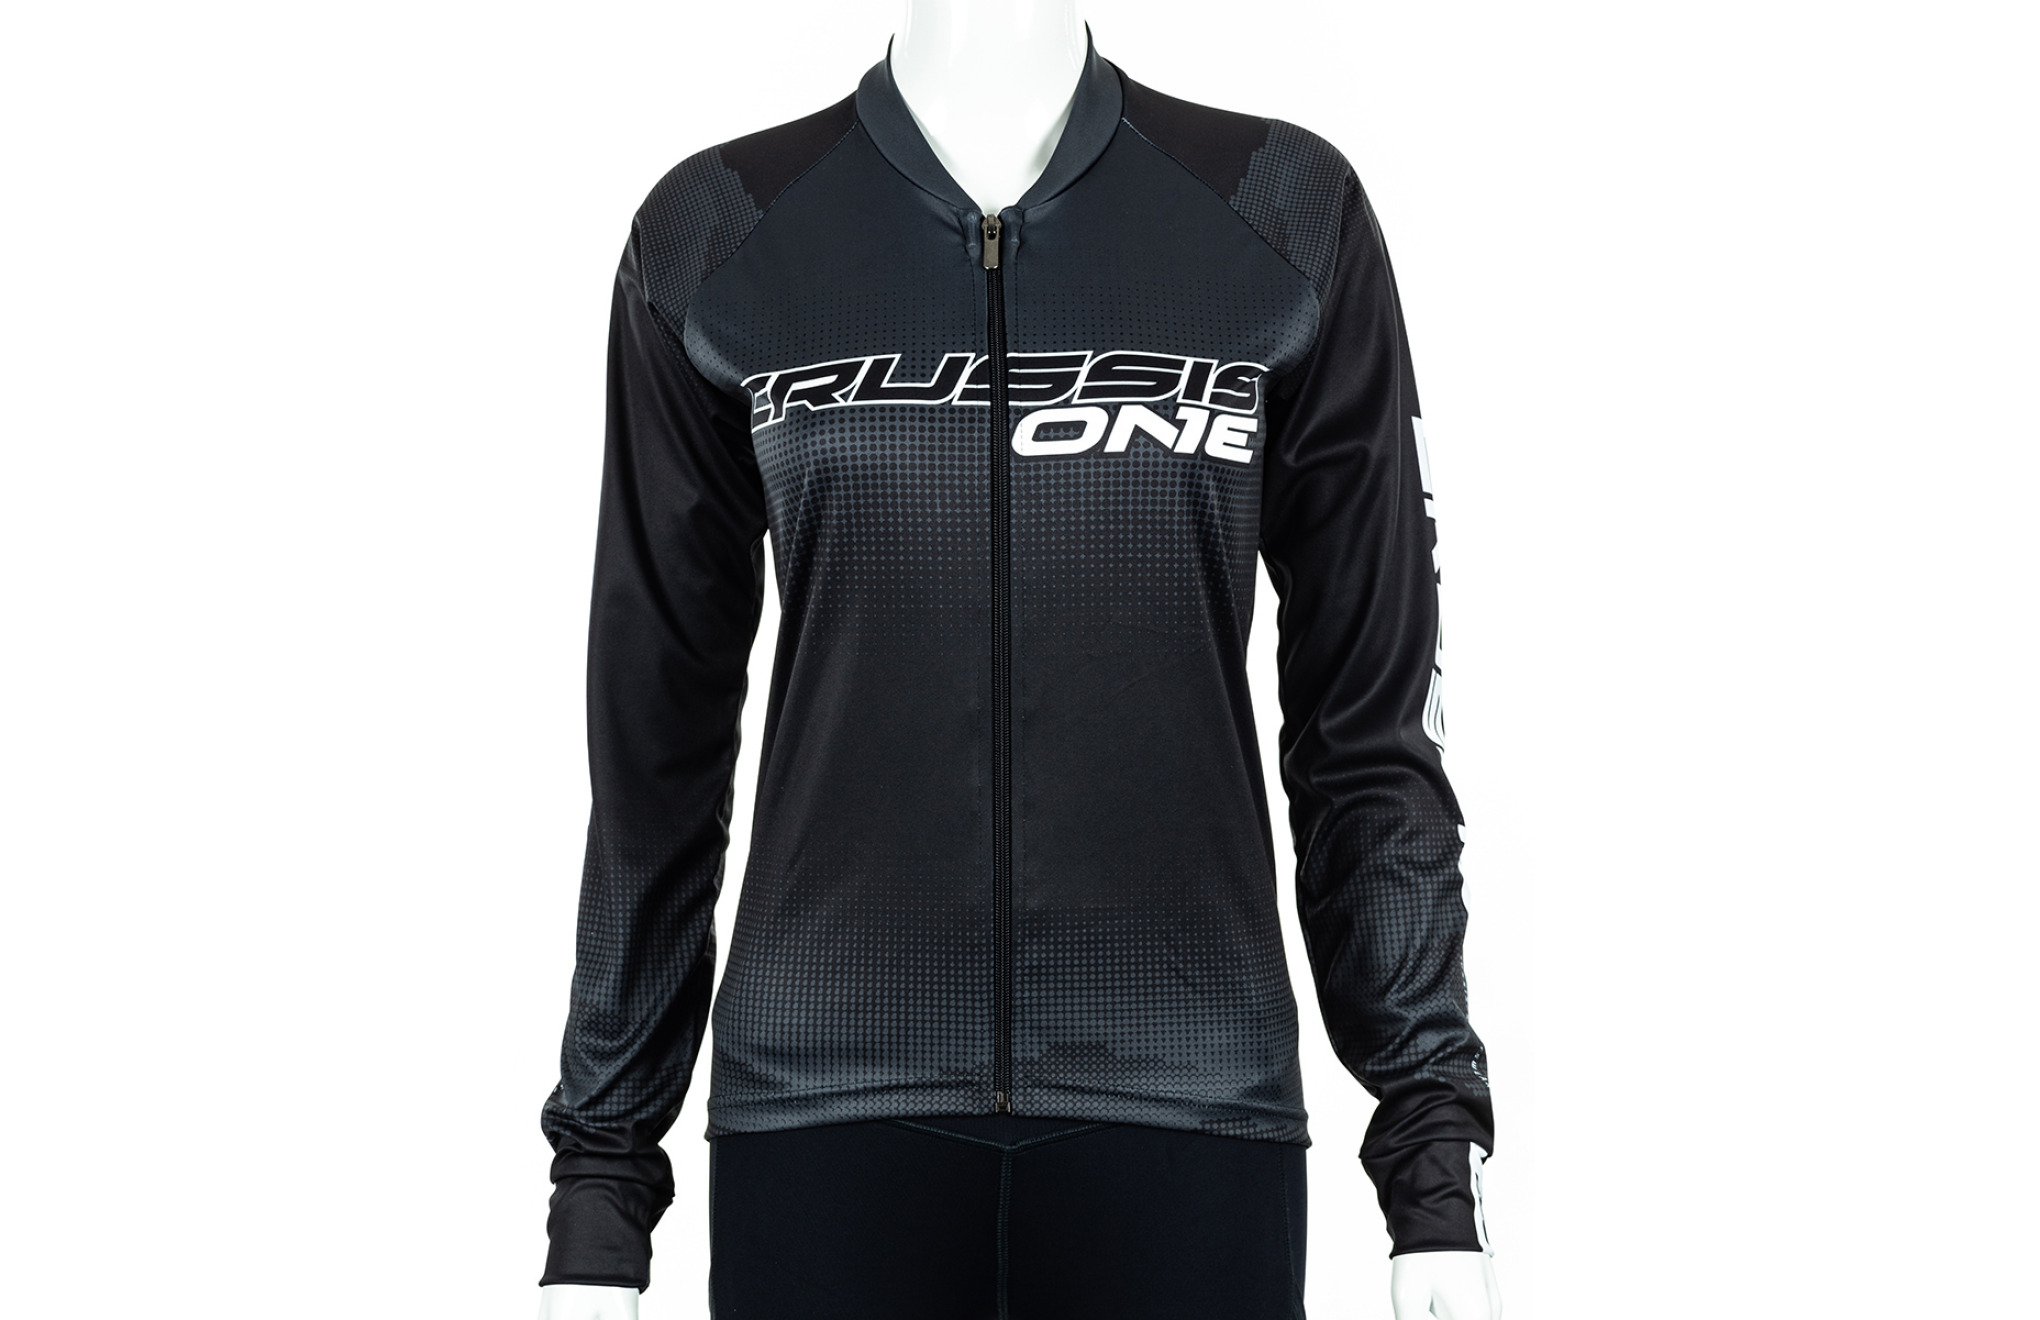 Dámský cyklistický dres CRUSSIS - ONE, dlouhý rukáv, černá/bílá